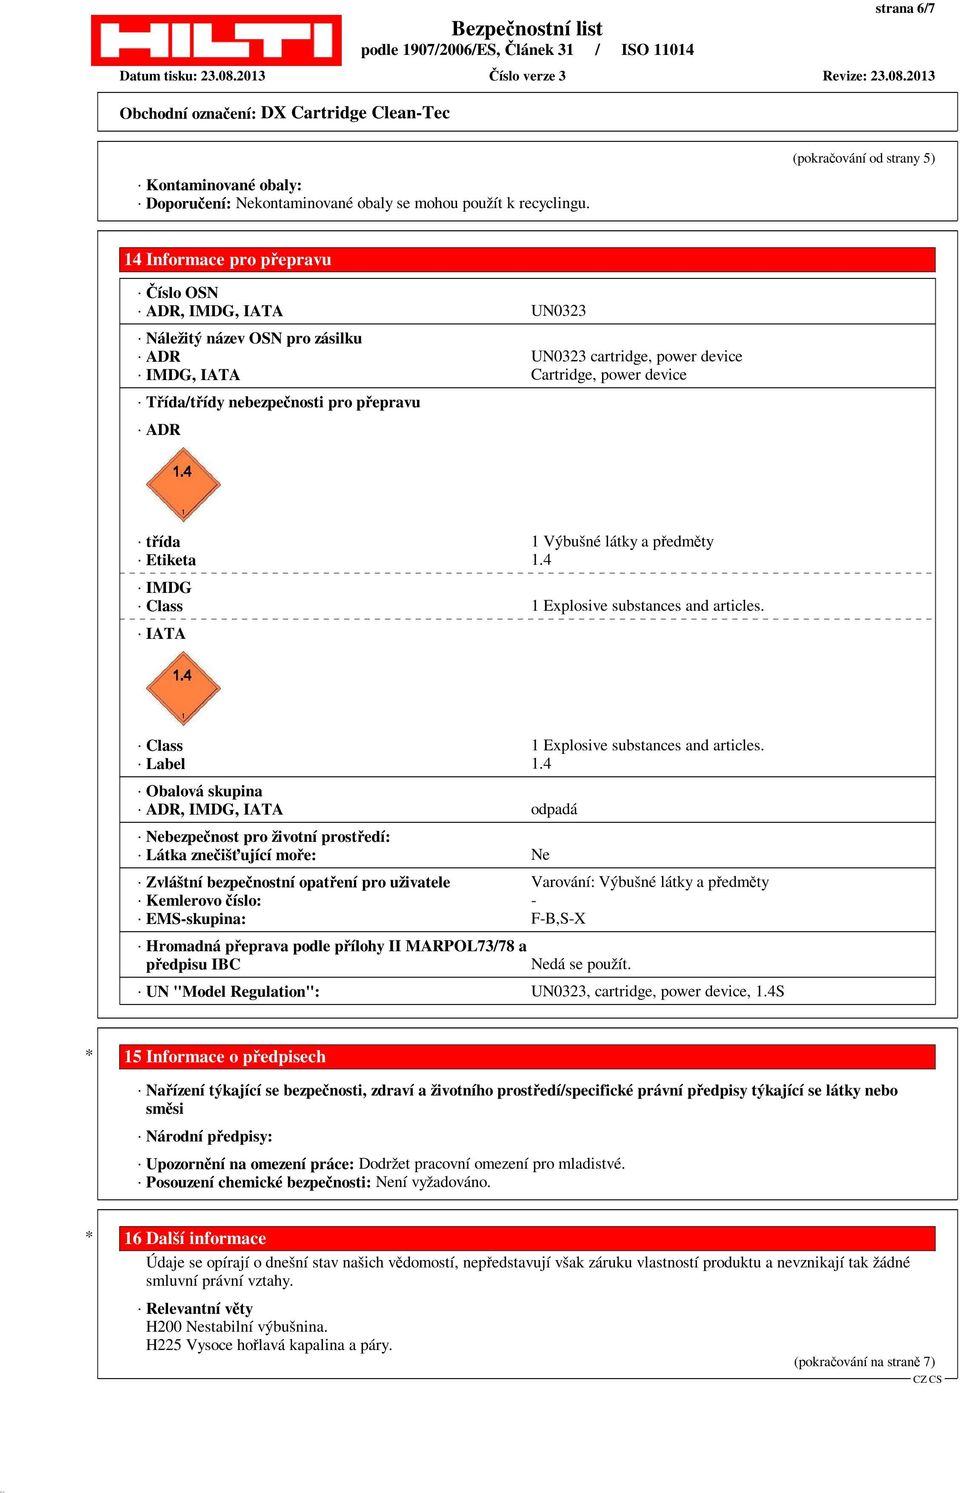 nebezpečnosti pro přepravu ADR třída 1 Výbušné látky a předměty Etiketa 1.4 IMDG Class 1 Explosive substances and articles. IATA Class 1 Explosive substances and articles. Label 1.